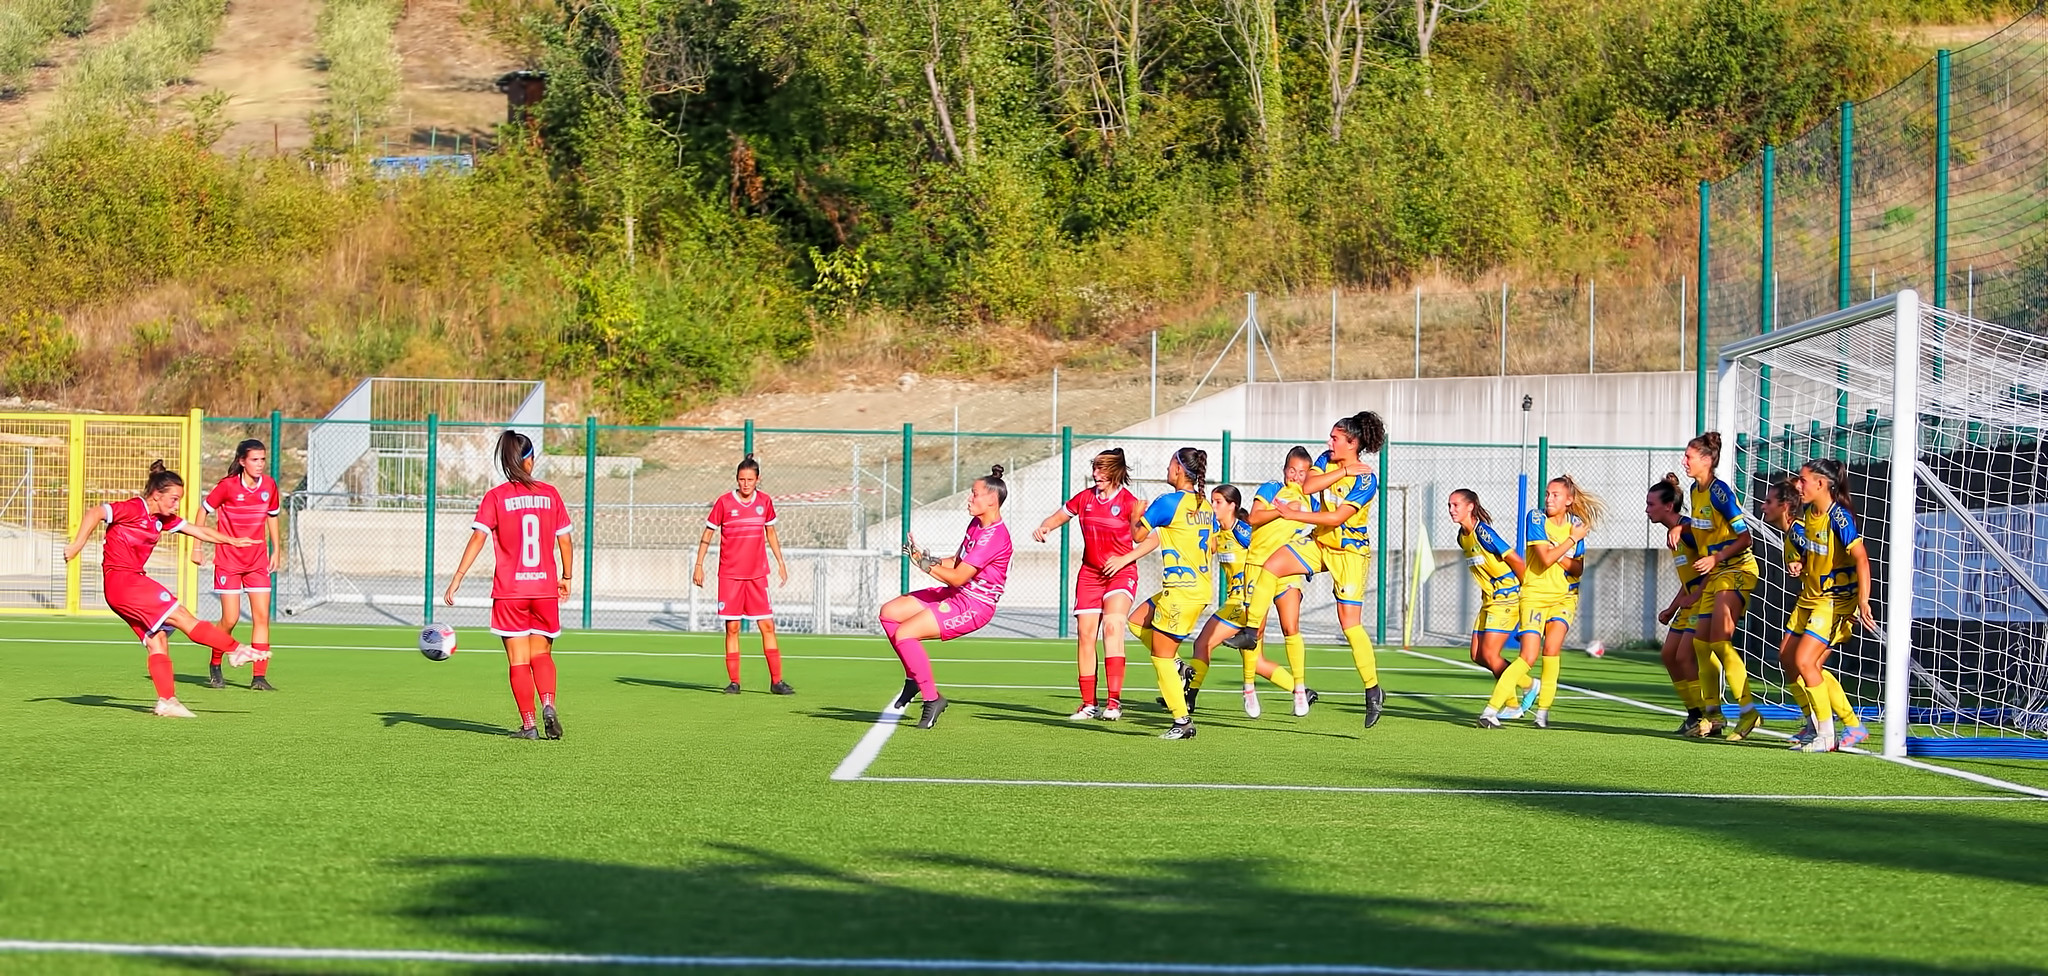 San Marino. Calcio femminile,  Barbieri segna ancora, ma non basta: i tre punti vanno al Chievo delle ex